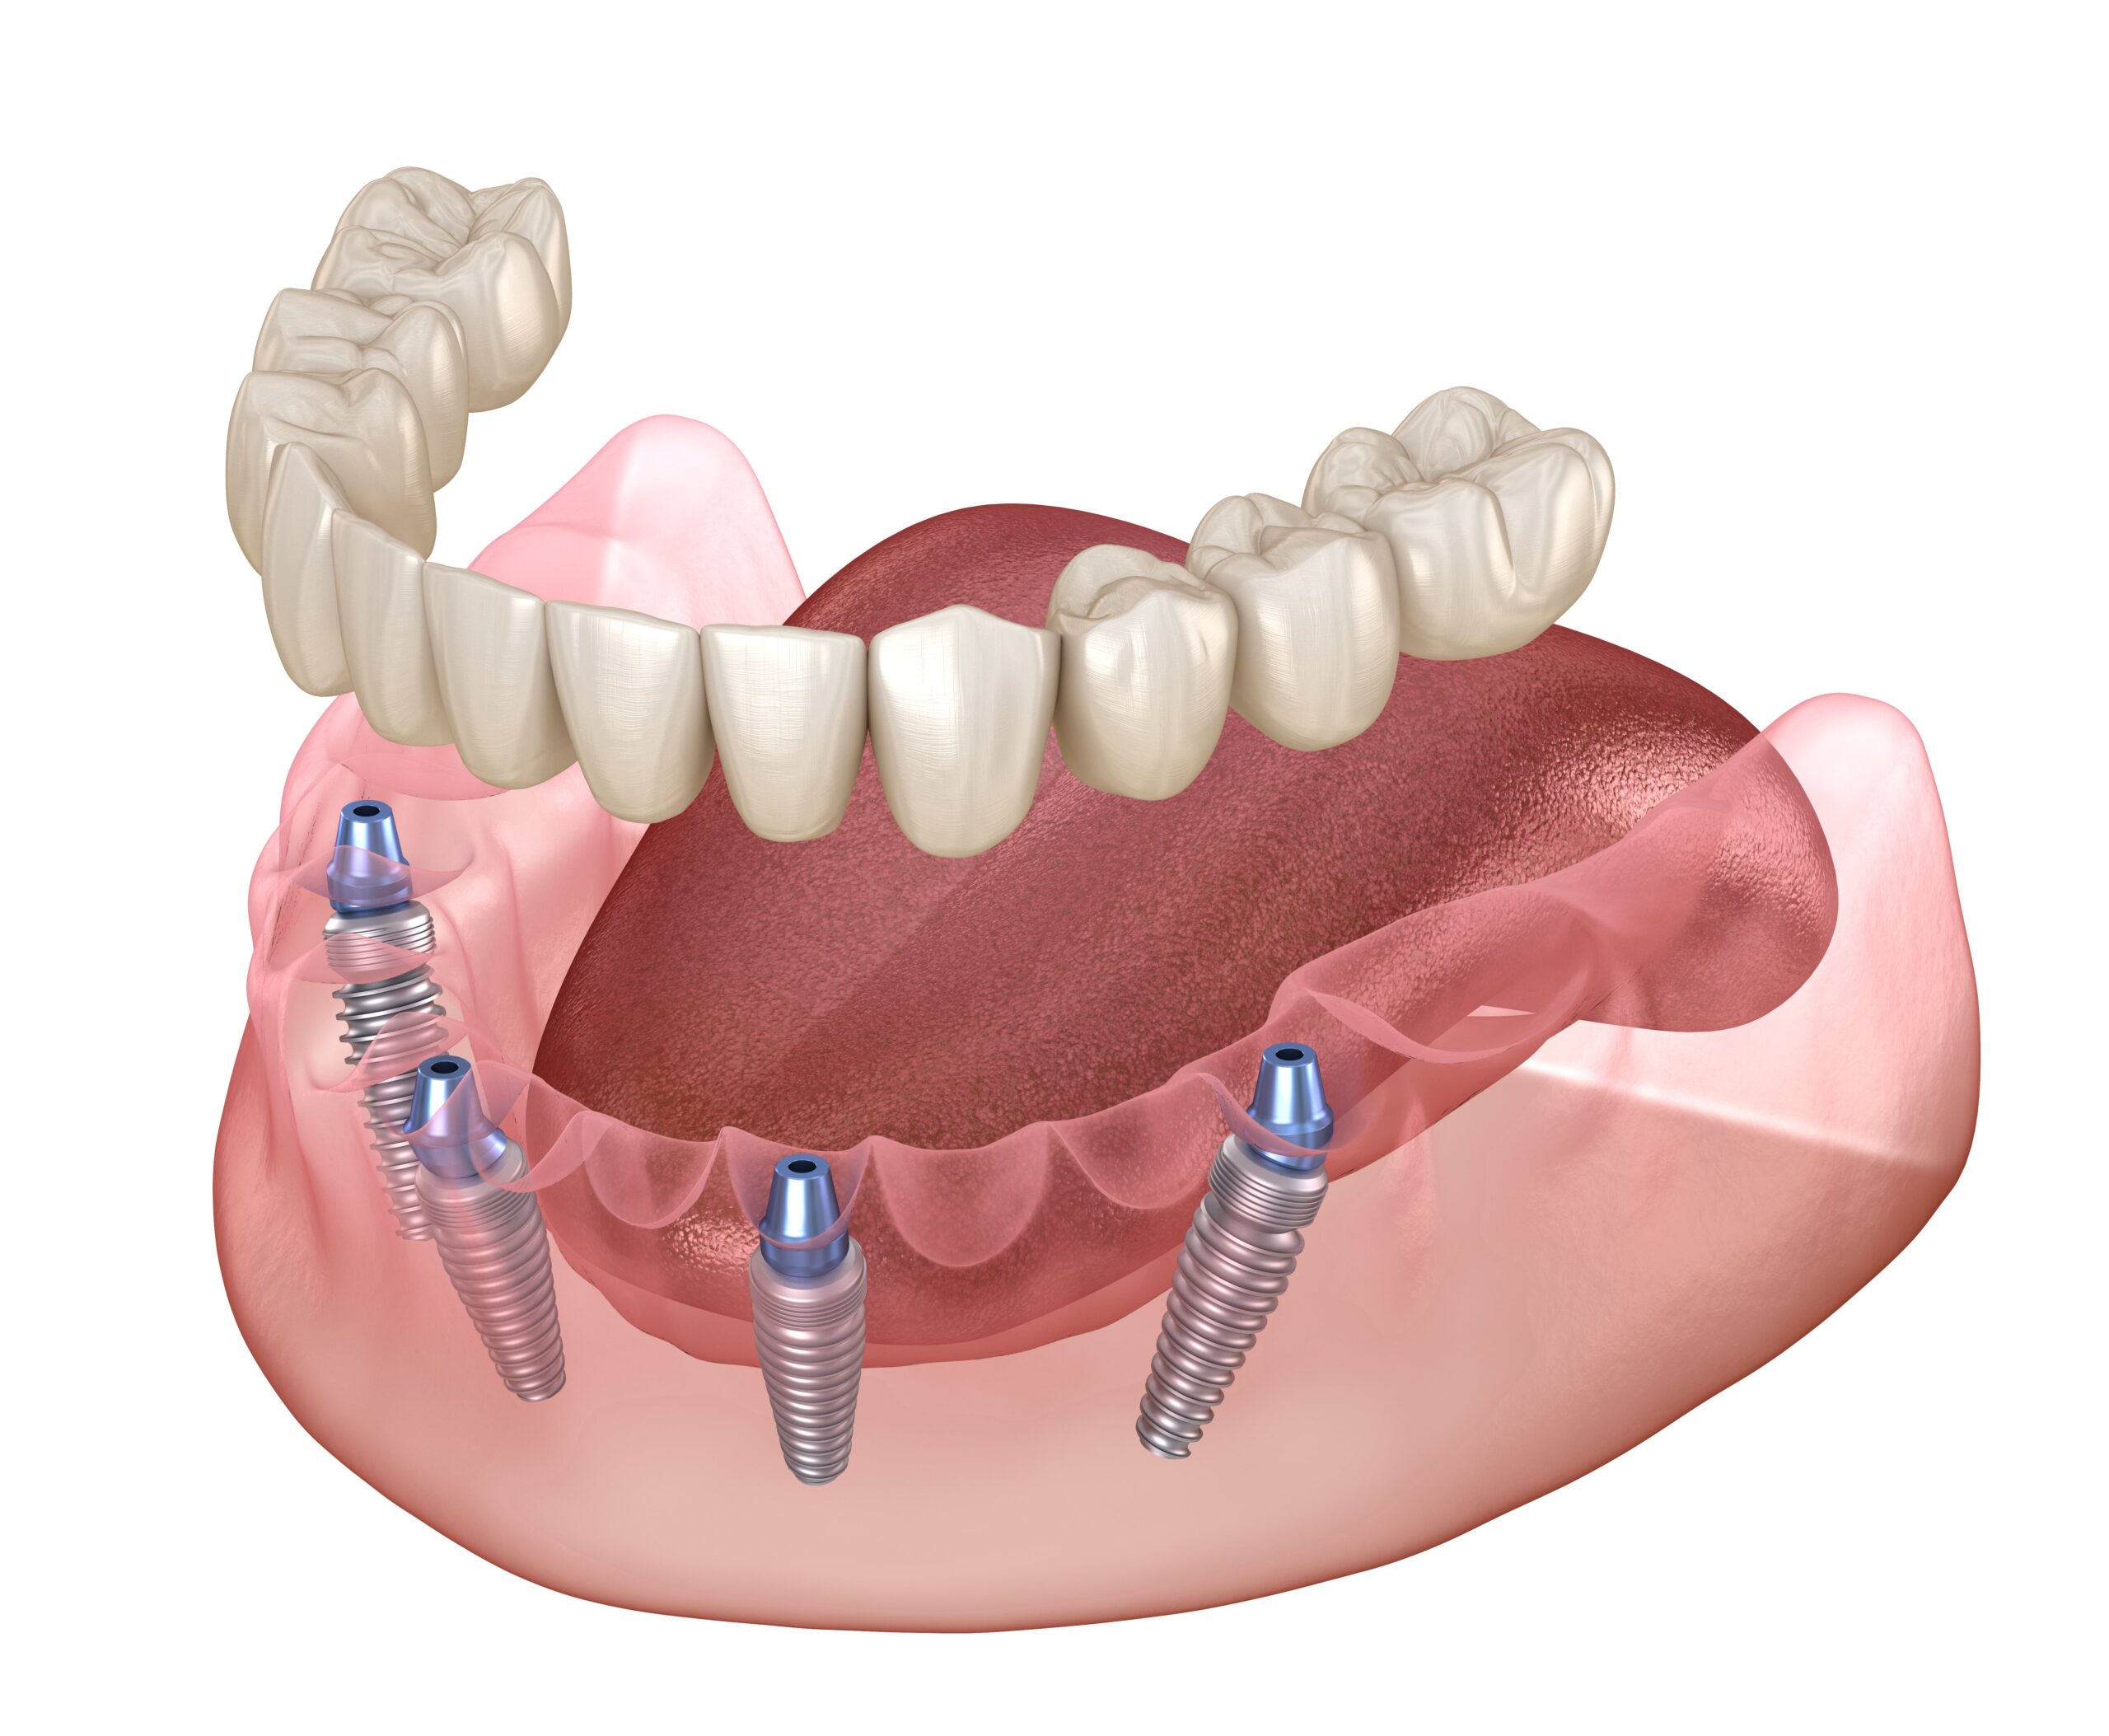 При имплантации по методу «ВСЕ-НА-4» и «ВСЕ-НА-6» удаление зубов включено в стоимость